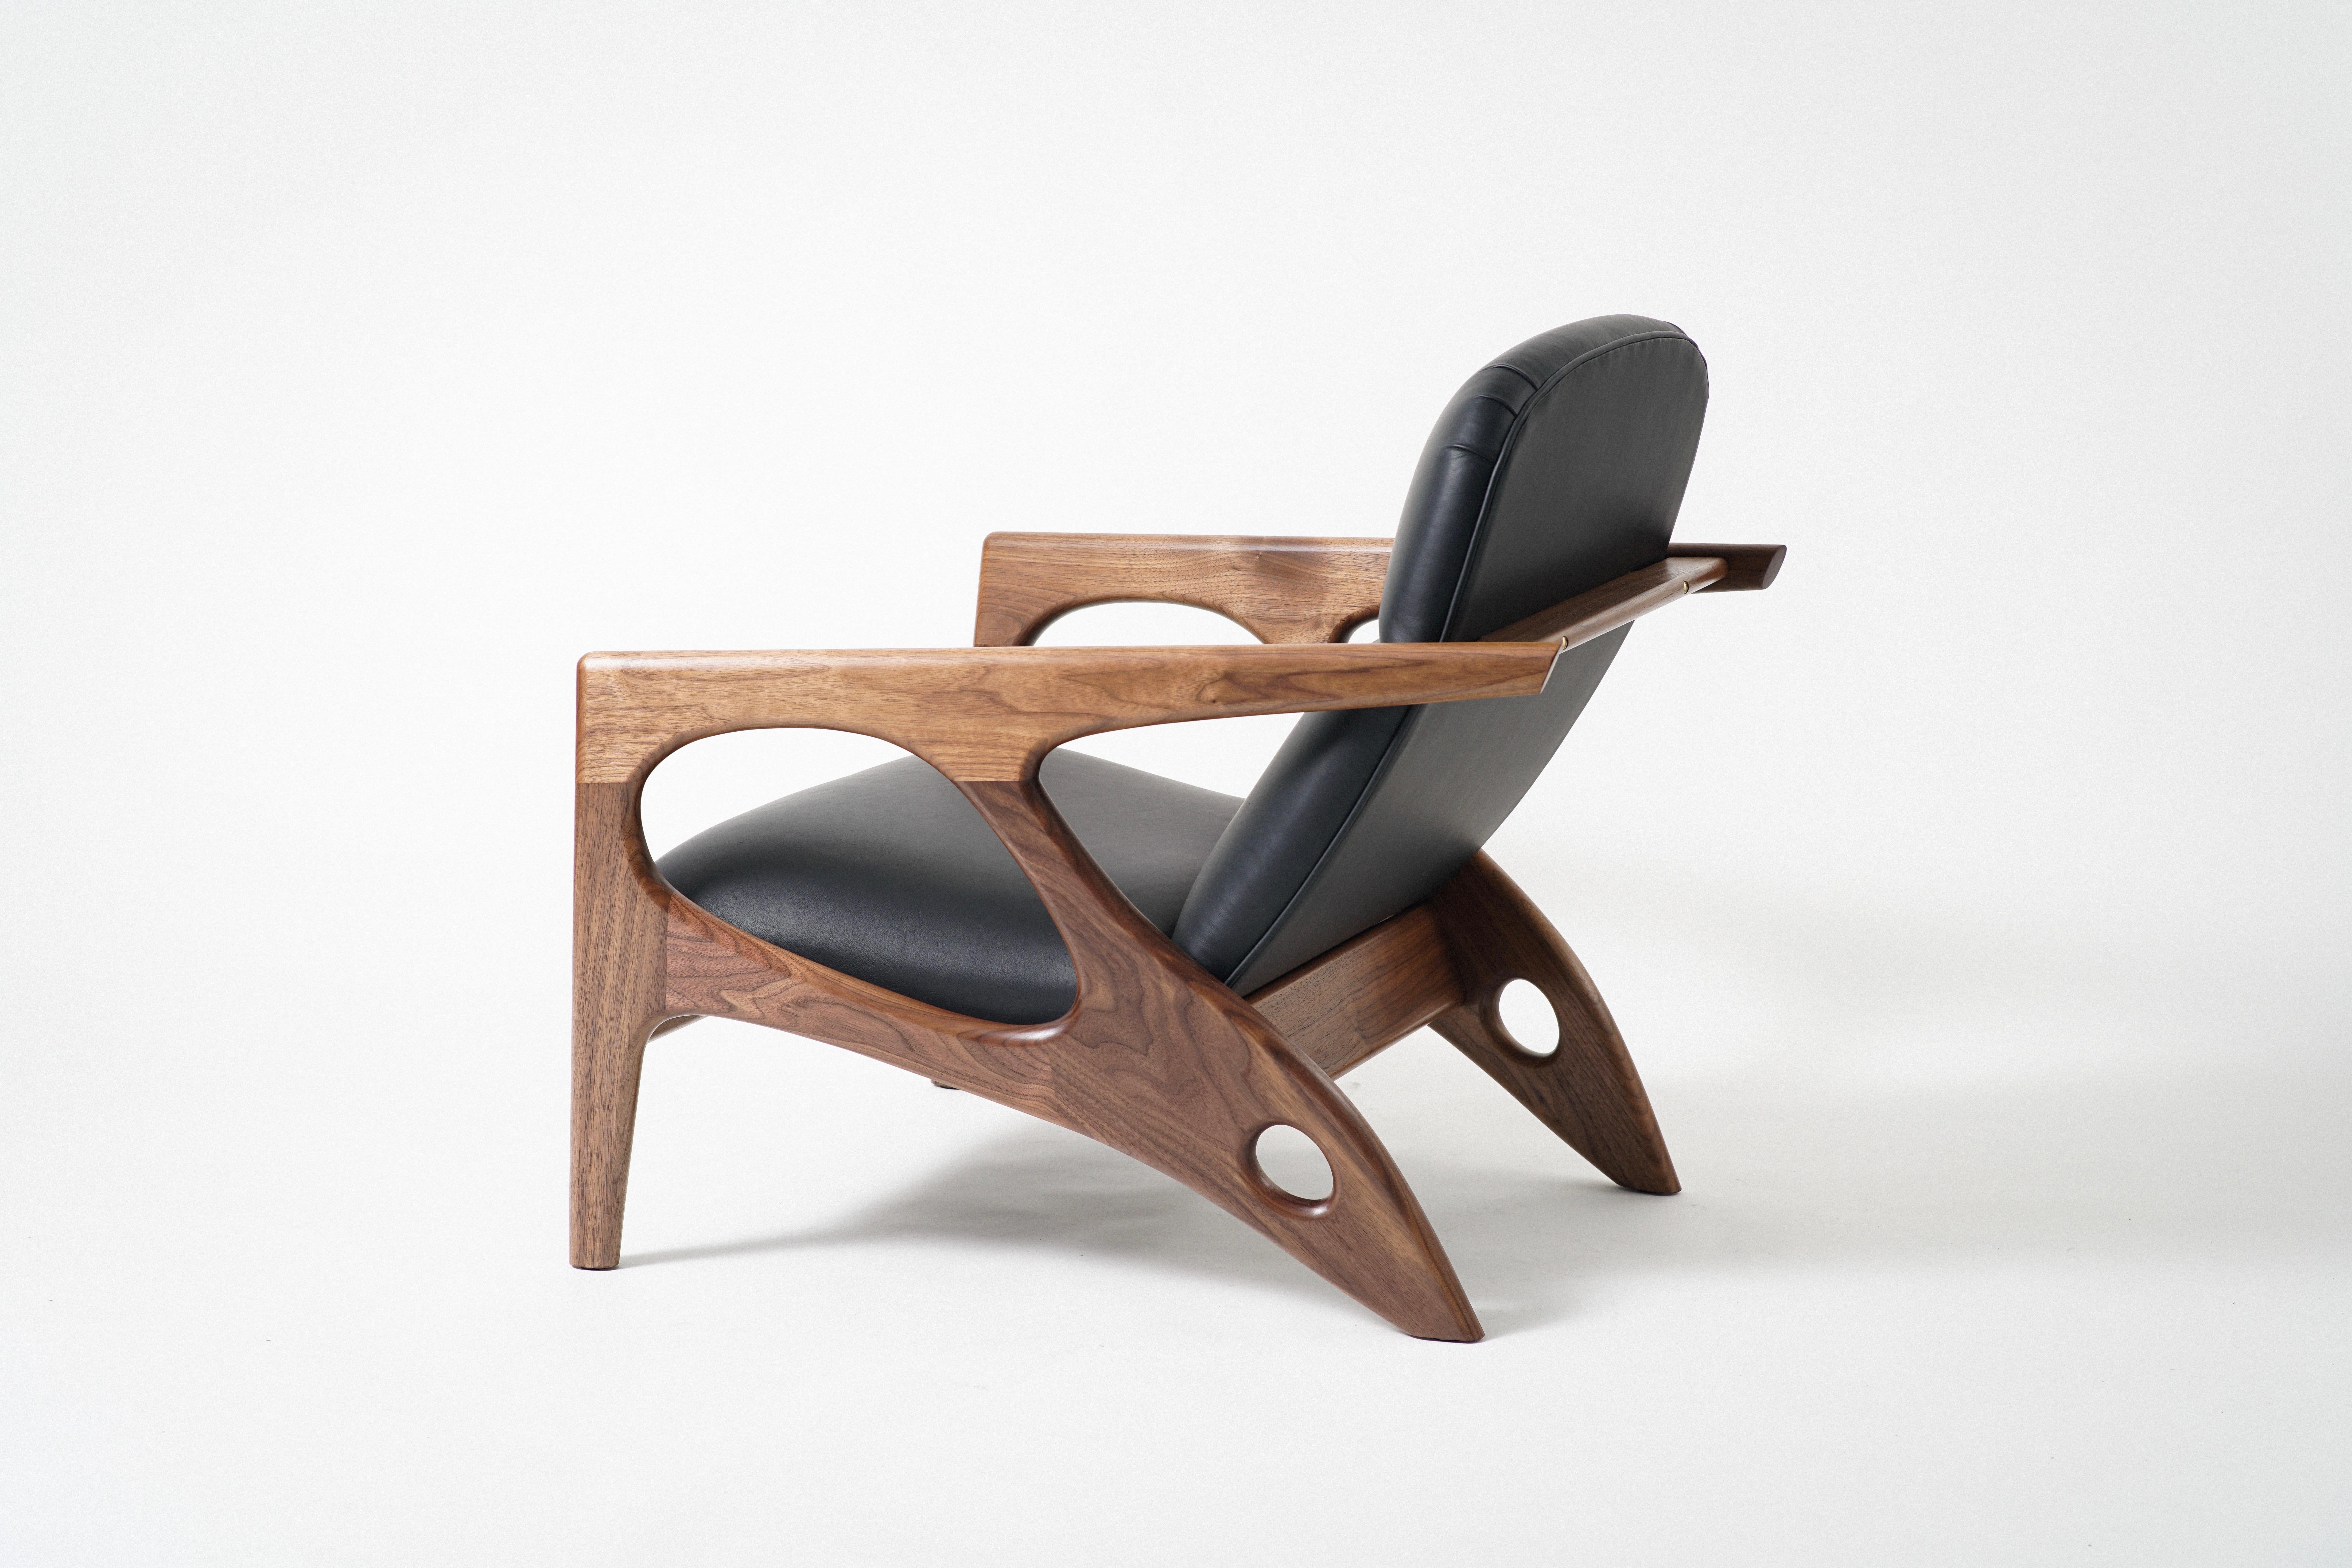 Le fauteuil Osprey Lounge Chair a un cadre en bois dur exposé qui abrite une coque rembourrée, avec un revêtement en cuir. Le cadre unique s'inspire à la fois du design nautique et du monde naturel. Le cadre généreux s'ouvre et se rétrécit, comme